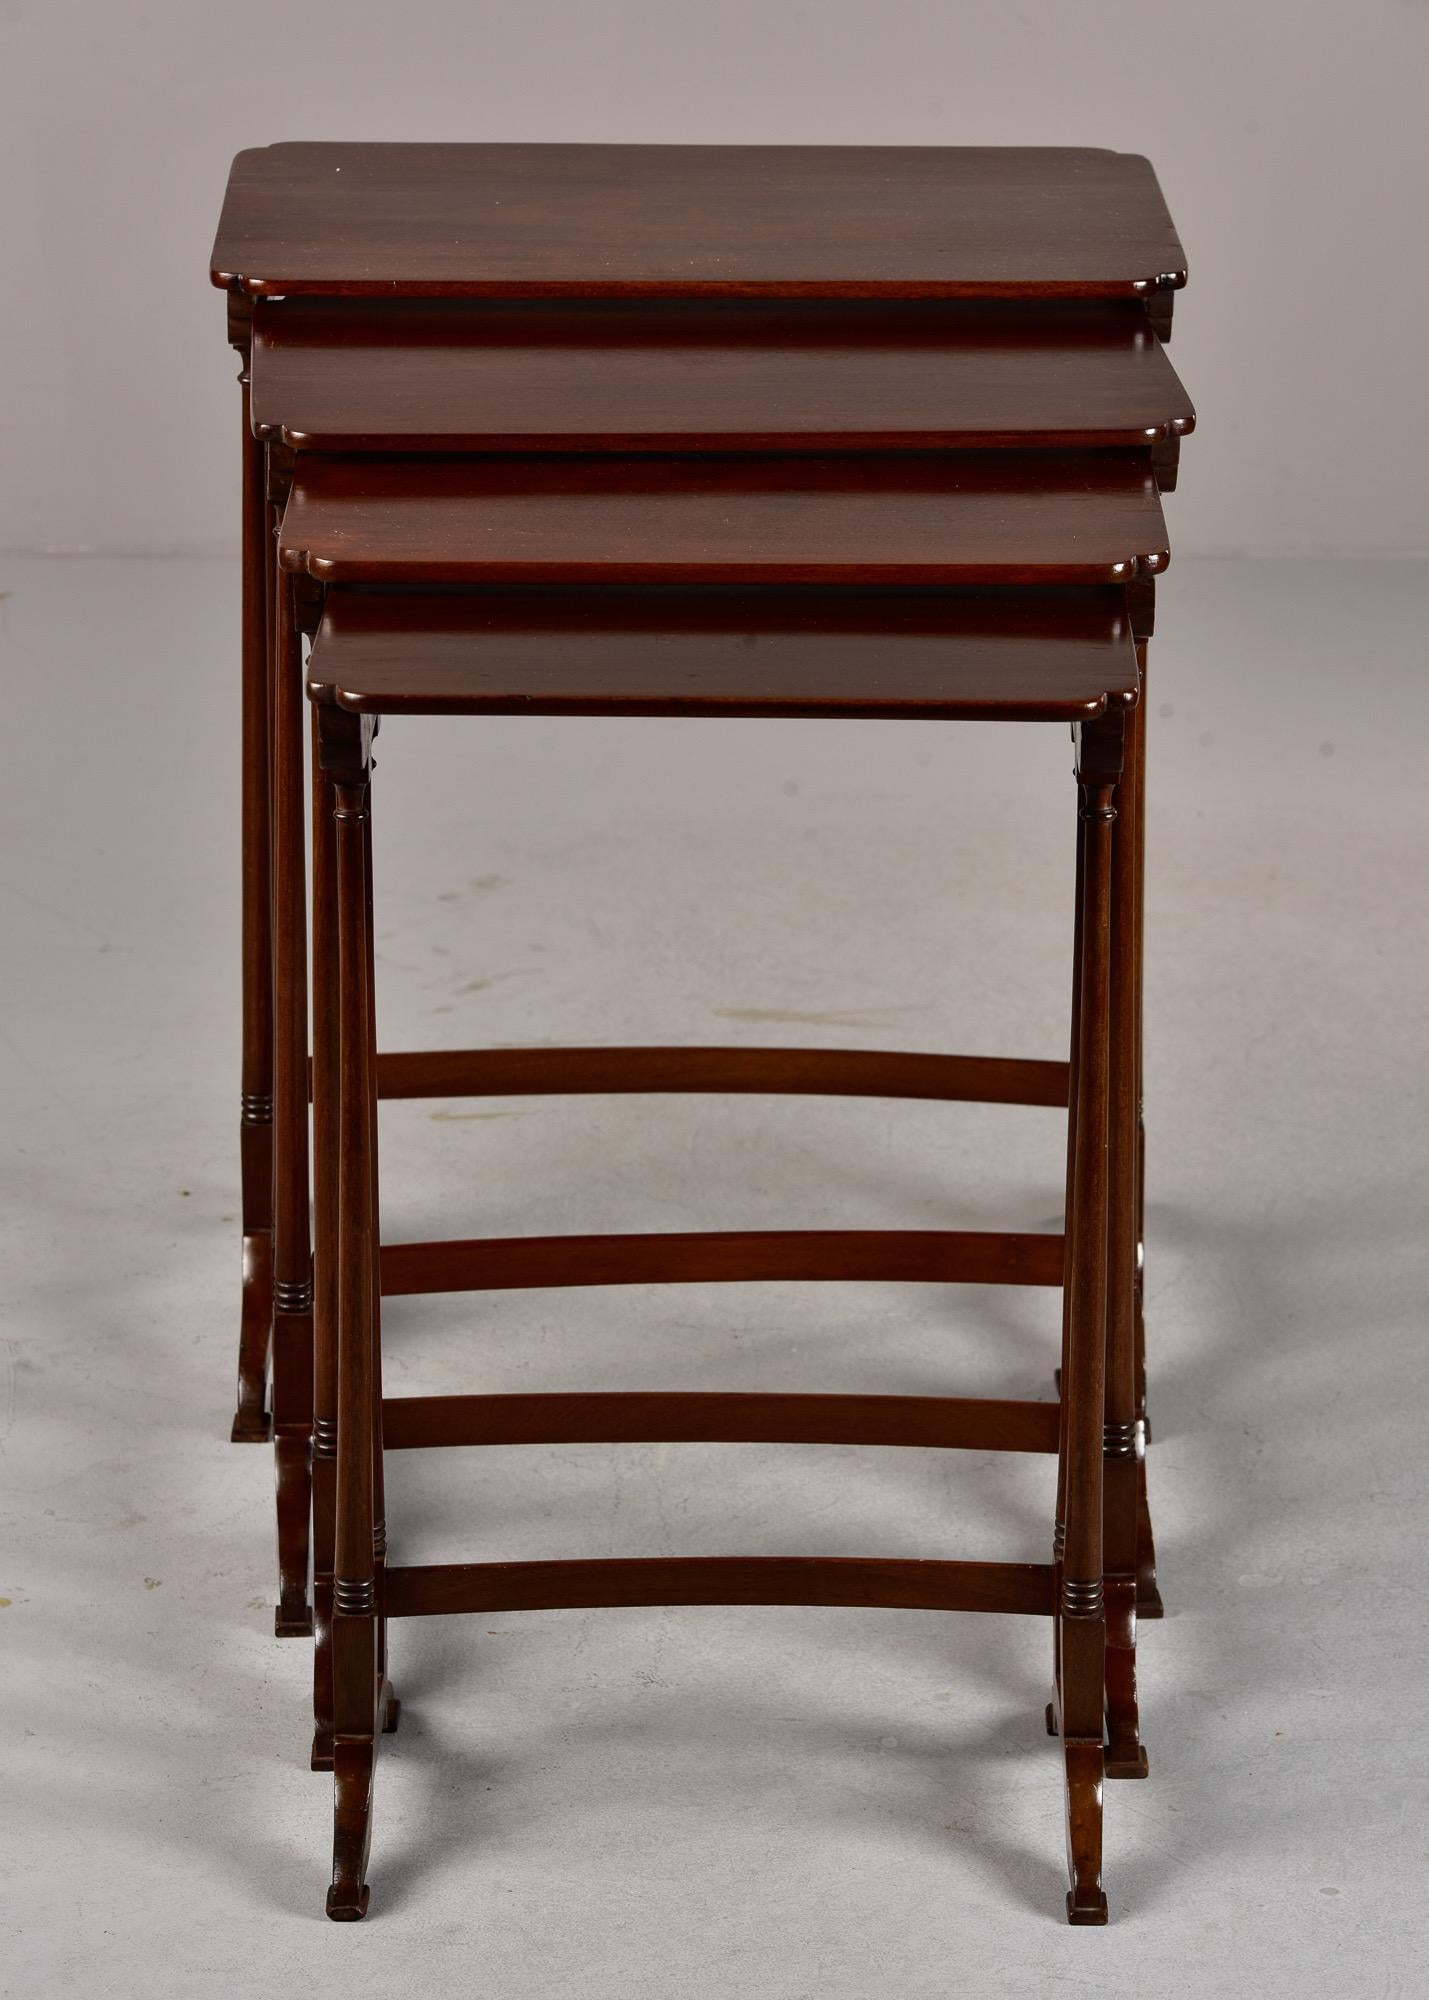 Vier englische Mahagoni-Nesting-Tische mit schlanken Rahmen und Sockeln aus den 1920er Jahren. Unbekannter Hersteller. 

#1 = 28